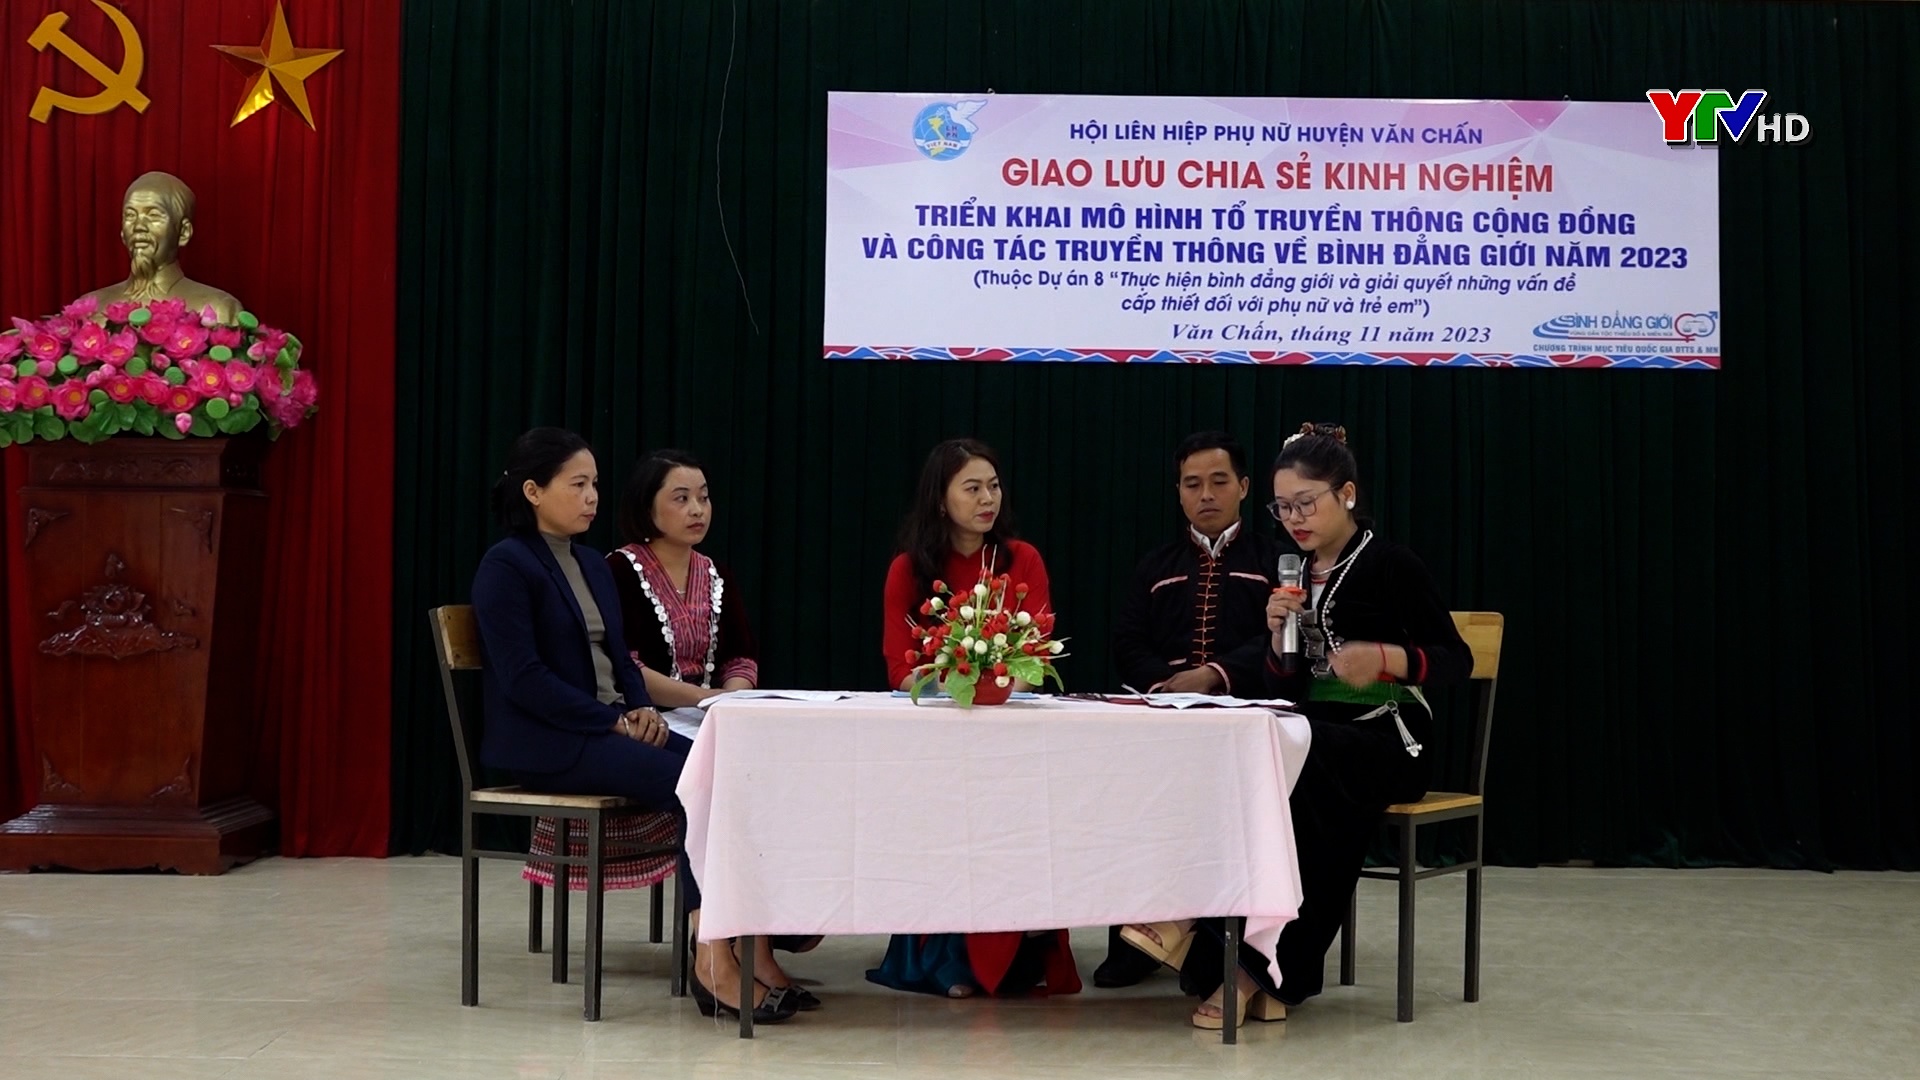 Hội Liên hiệp phụ nữ huyện Văn Chấn giao lưu chia sẻ kinh nghiệm triển khai mô hình truyền thông cộng đồng